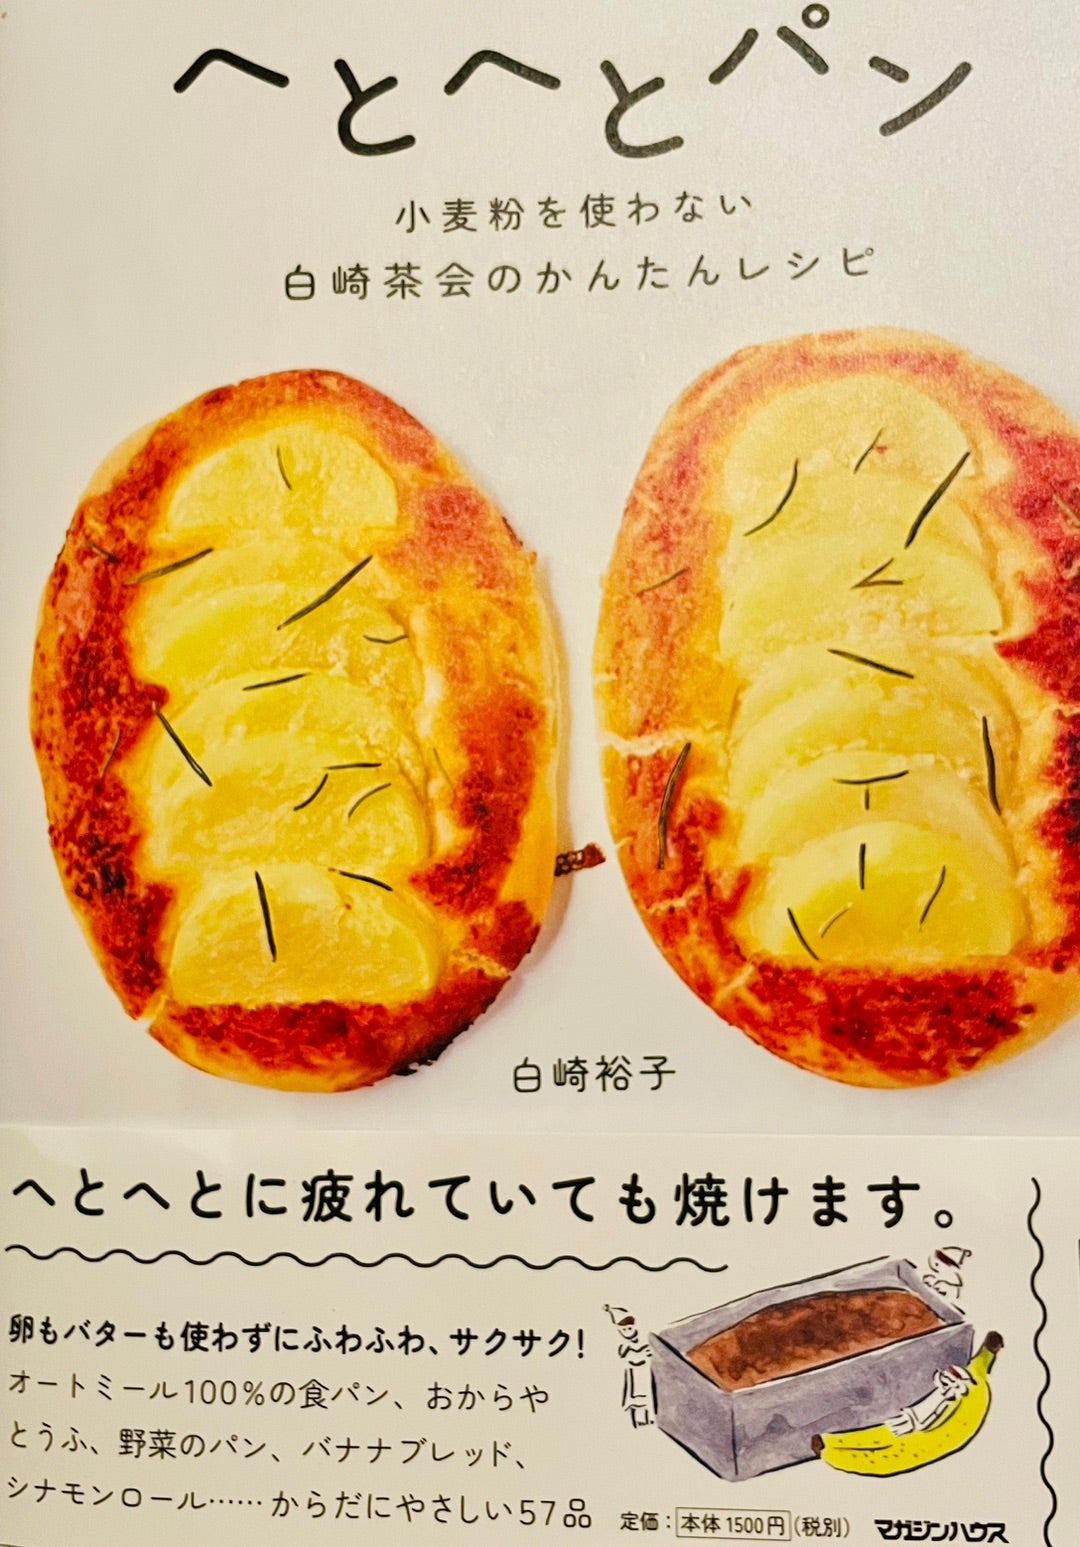 へとへとパン | JOYRIDE Official Blog